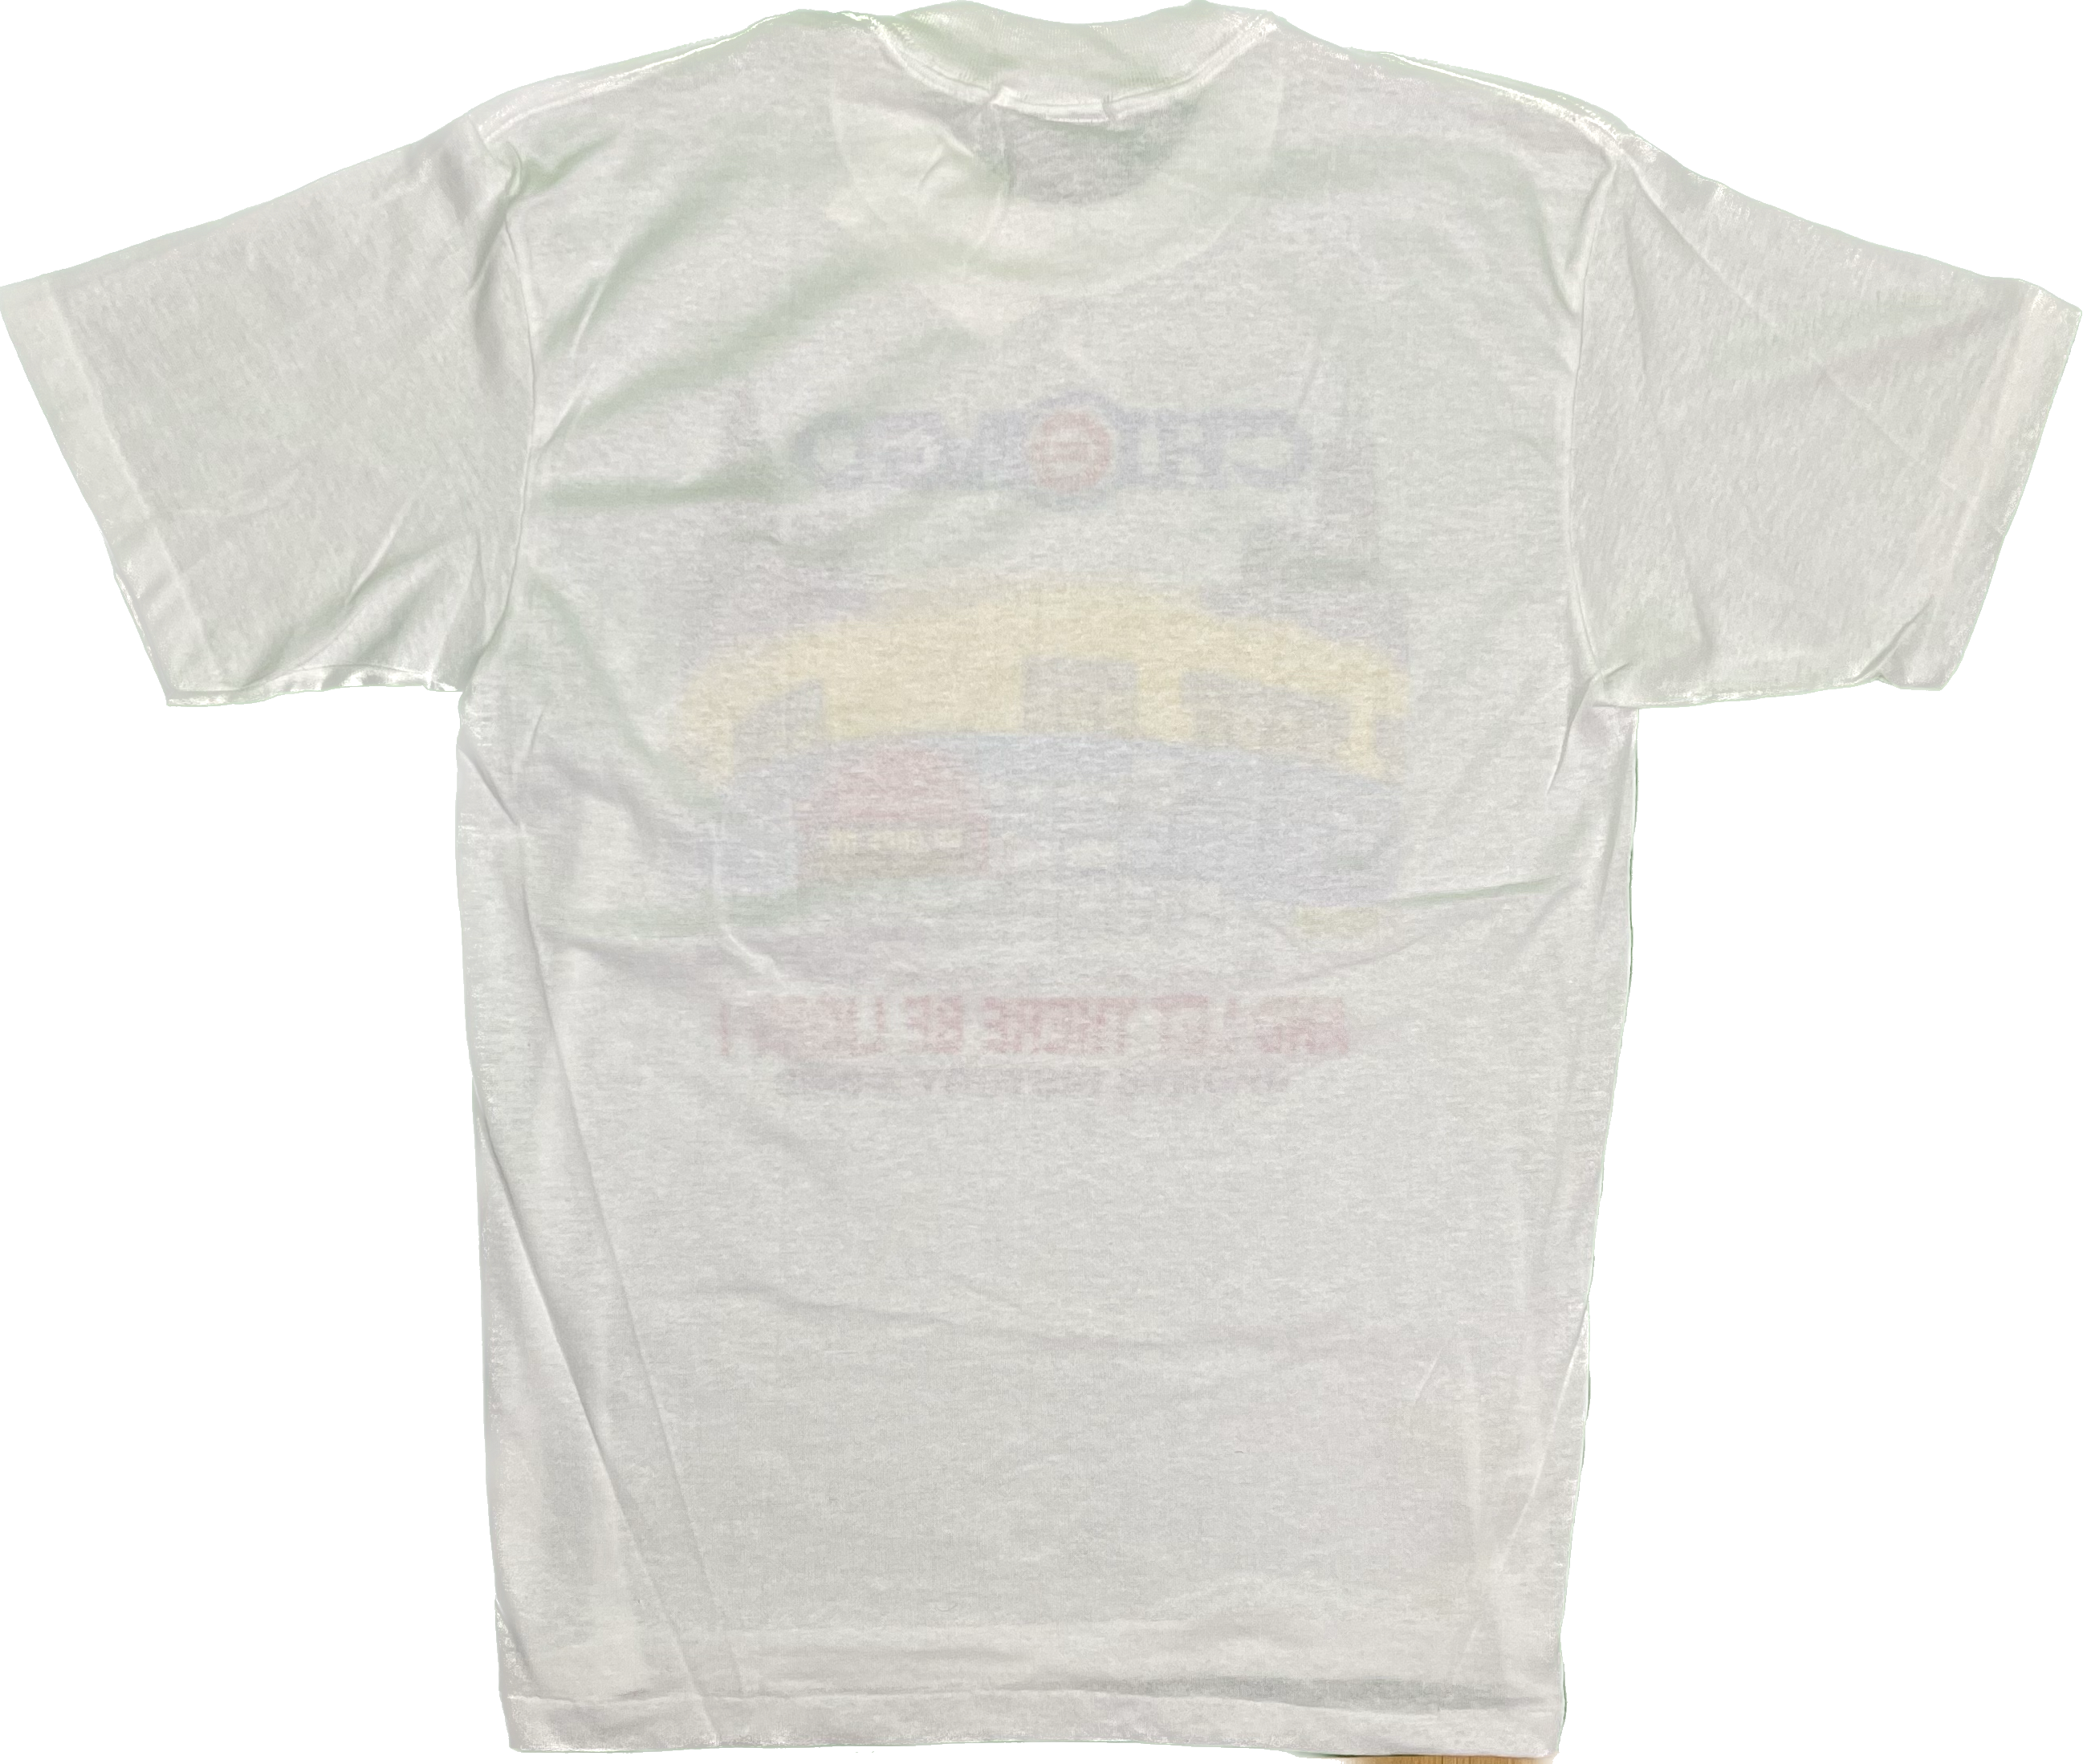 03' Florida Marlins National League Champions Vintage T-Shirt – Manonda